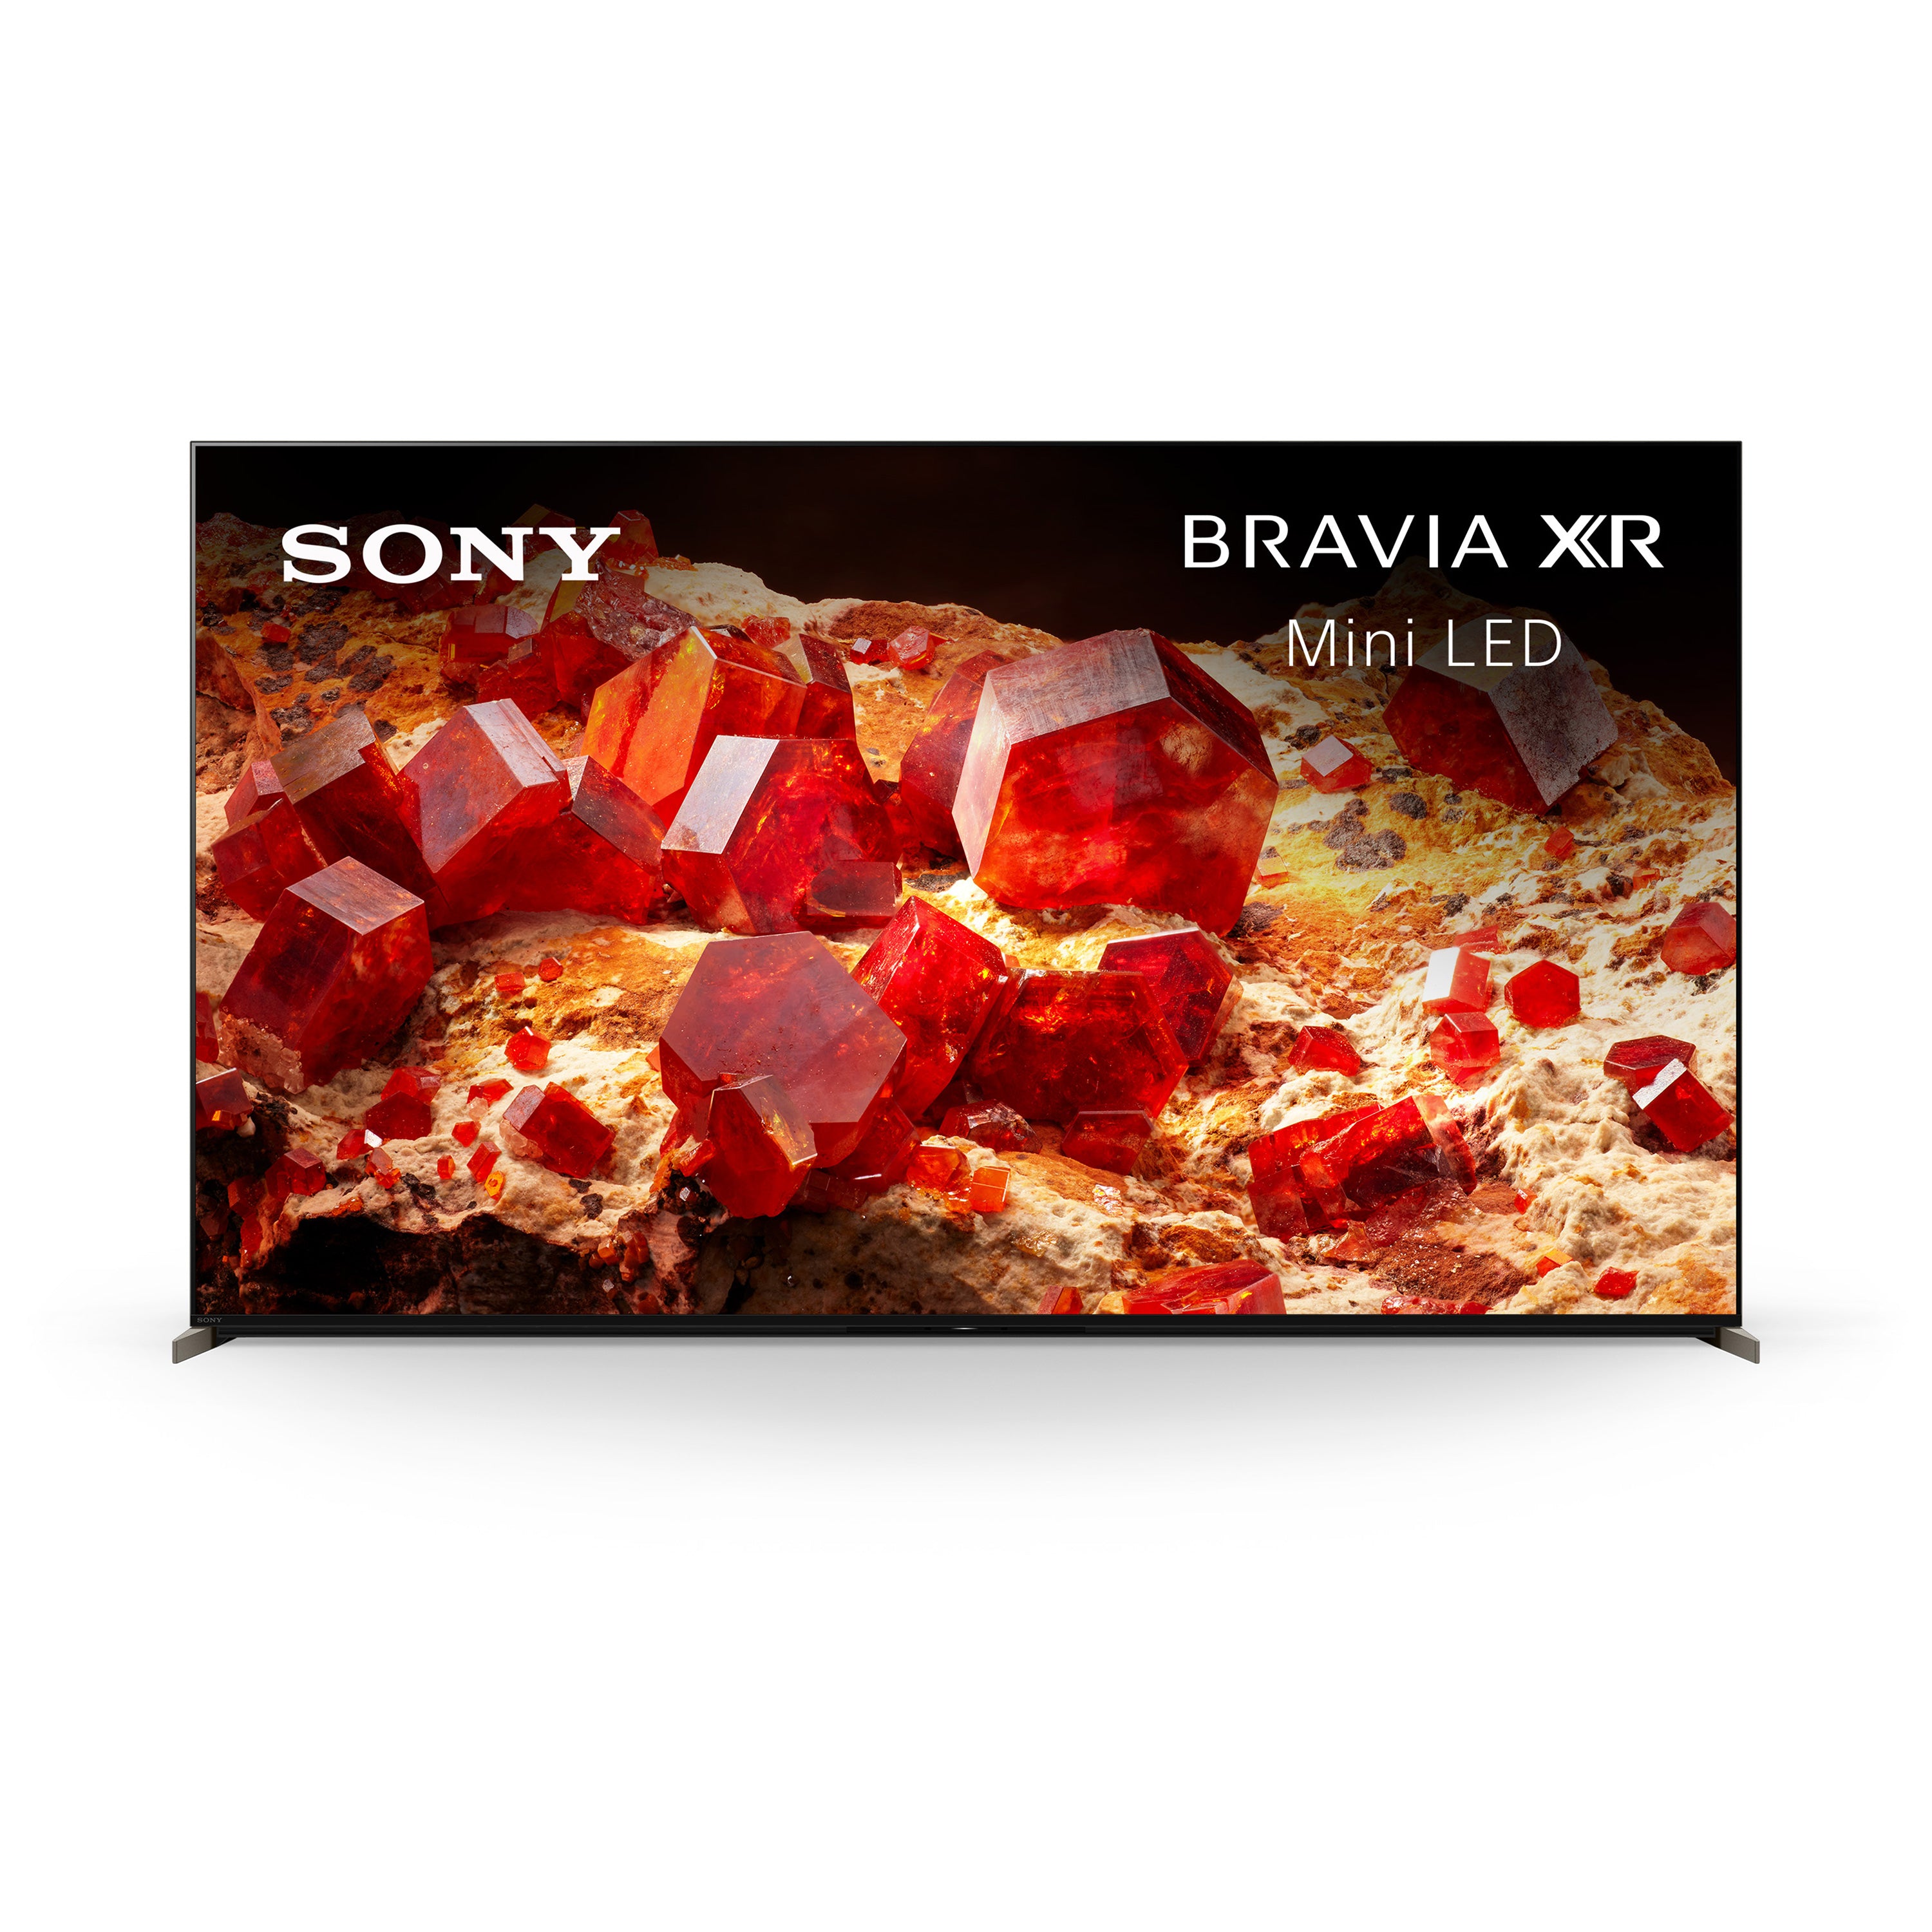 X93L BRAVIA XR | Mini LED | 4K HDR TV | Smart TV (Google TV)